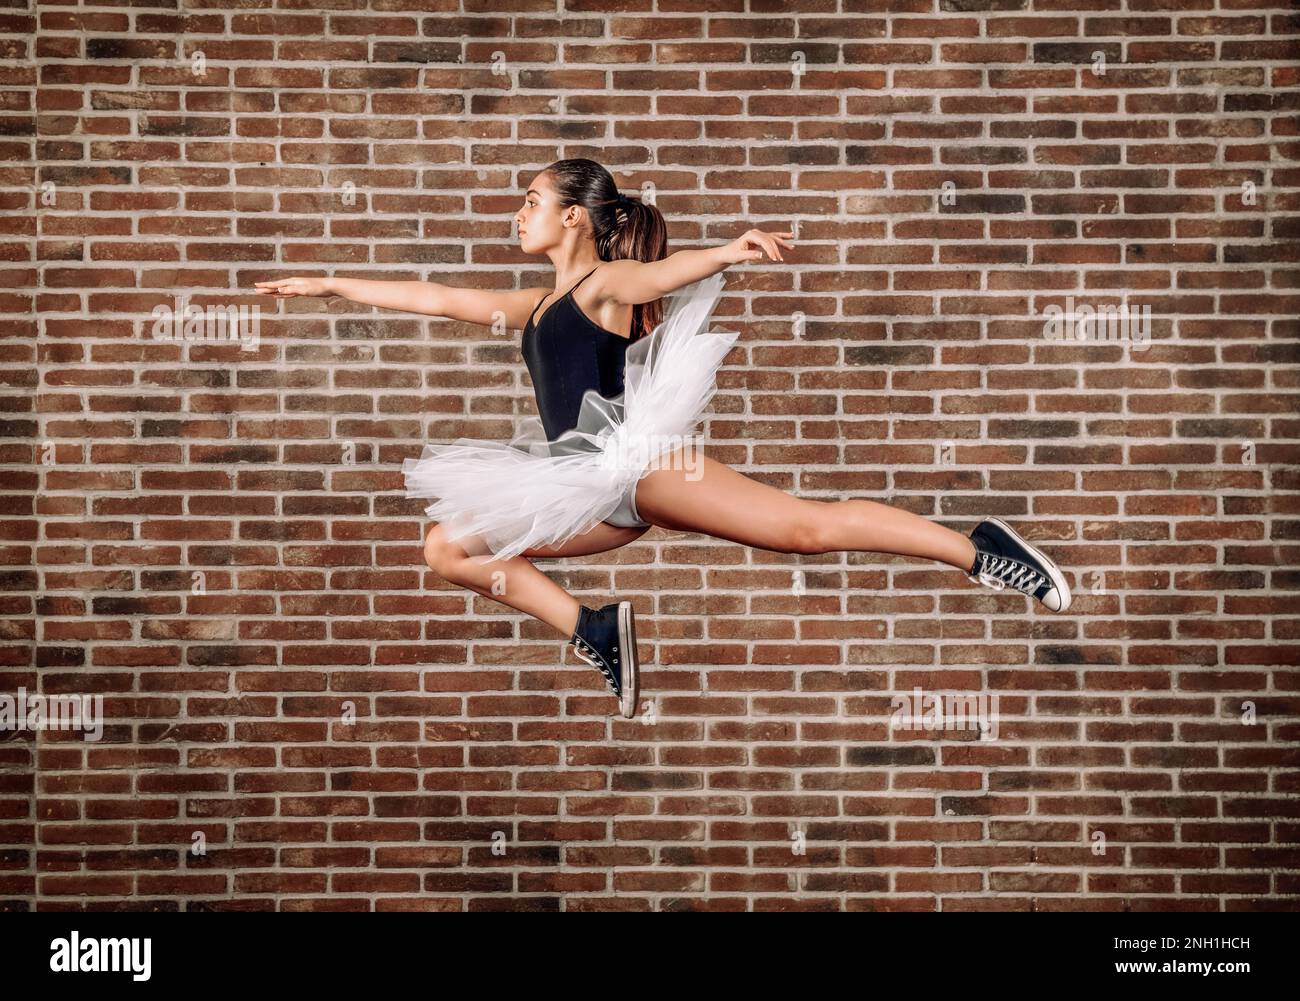 Vista lateral cuerpo completo de joven bailarina en tutú blanco y zapatillas negras saltando contra la pared de ladrillo Foto de stock